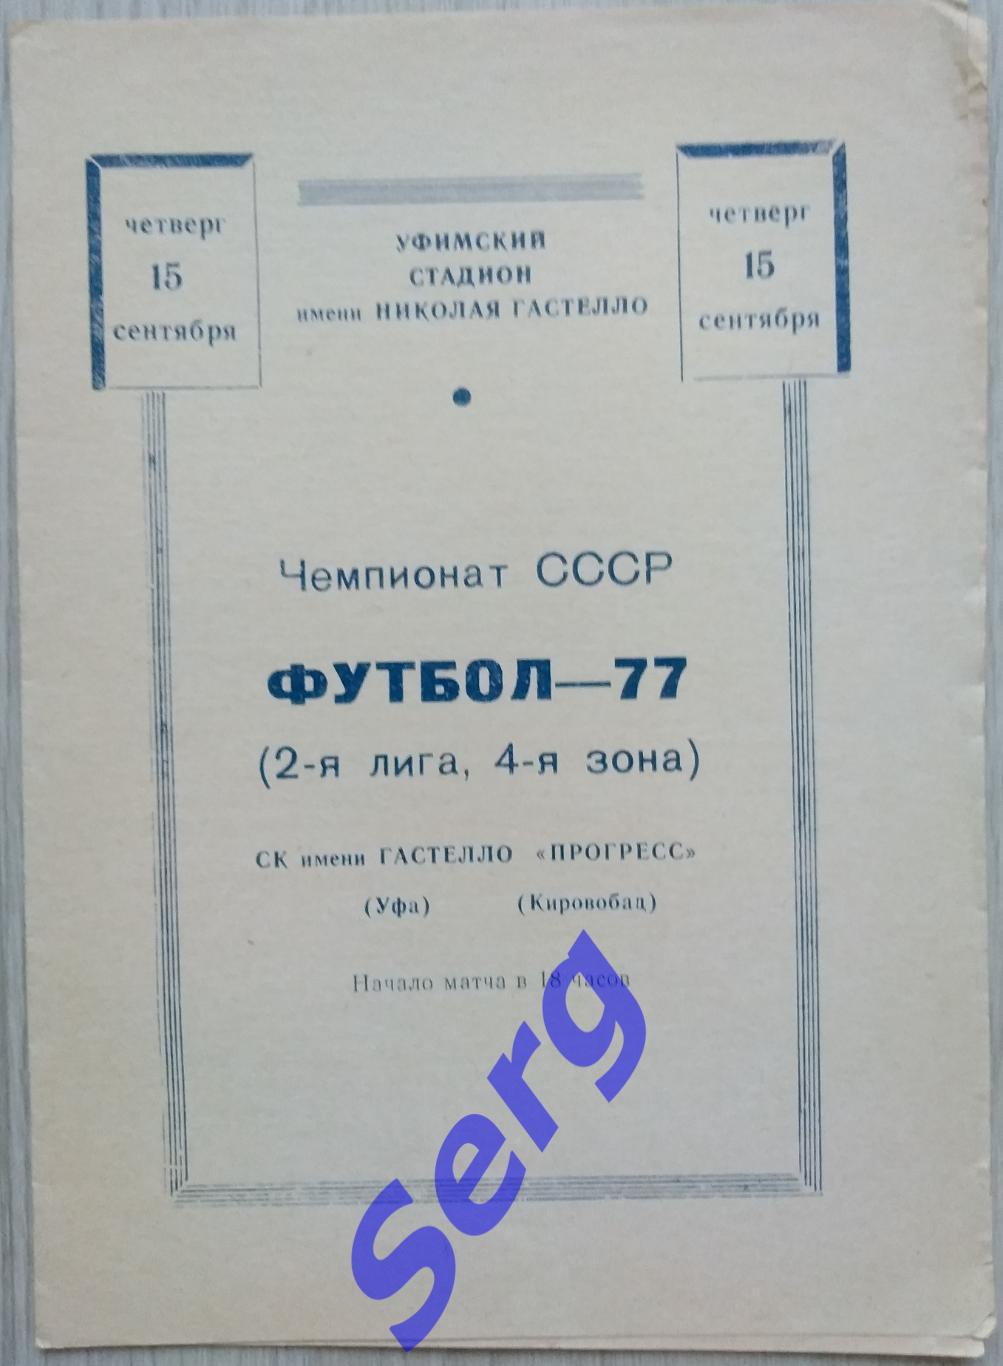 СК имени Гастелло Уфа - Прогресс Кировабад - 15 сентября 1977 год